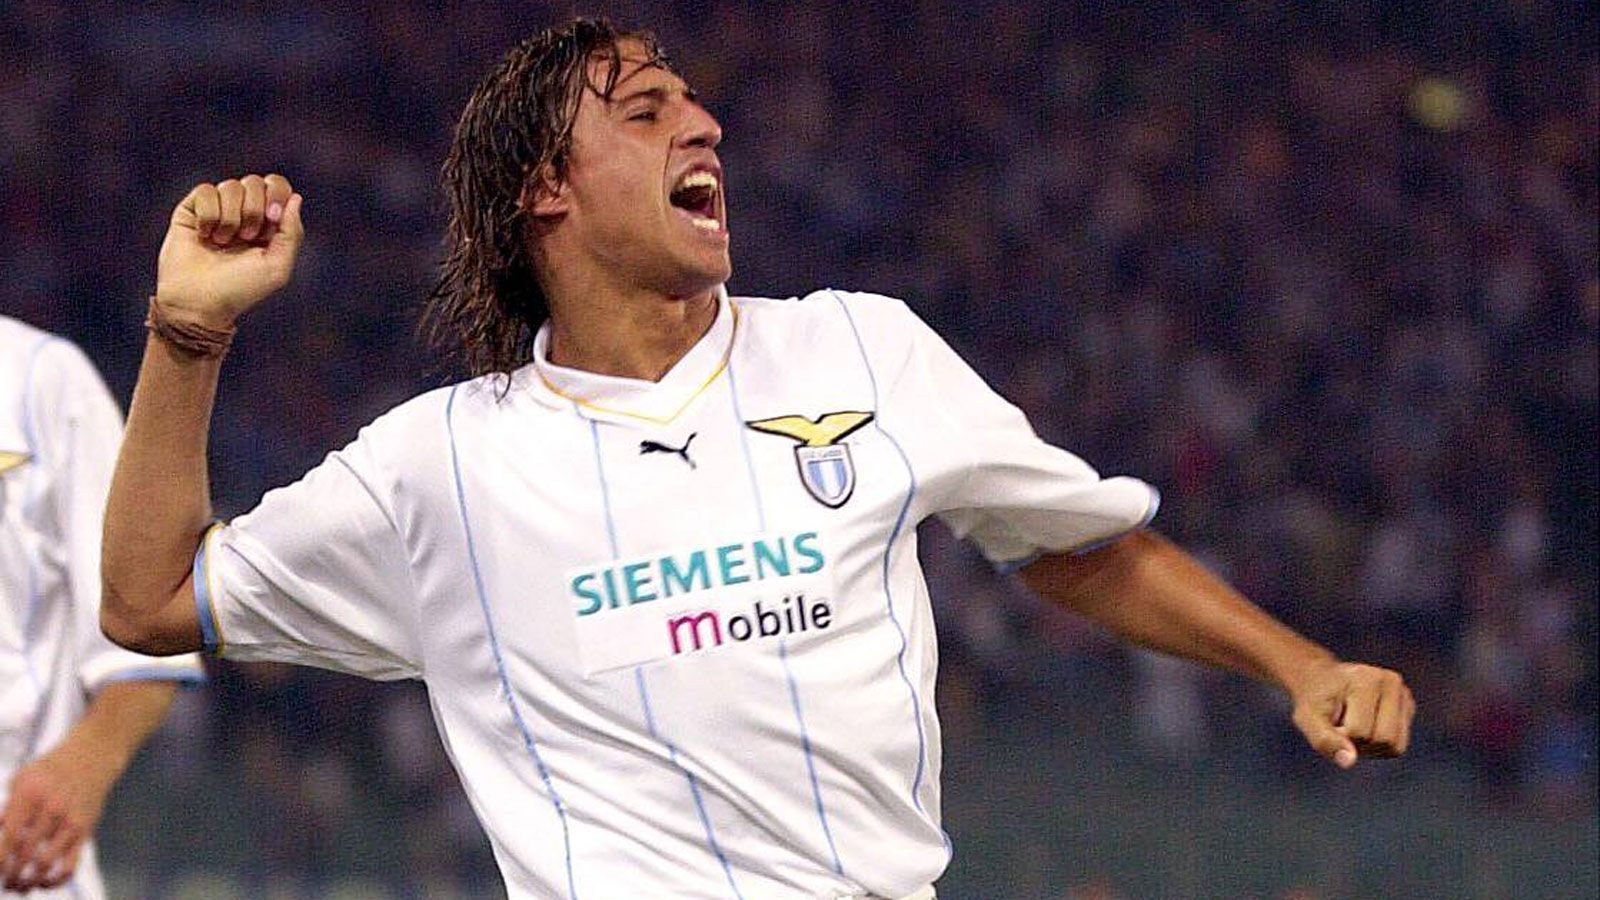 
                <strong>Hernan Crespo (Spieler)</strong><br>
                Anfang der 2000er Jahre schoss Hernan Crespo in Italien alles kurz und klein. 2002 wurde er Torschützenkönig der Serie A mit stolzen 26 Toren in 32 Spielen. Die Folge: Mit seinen Wechseln von Parma zu Lazio, von Lazio zu Inter und von Inter zu Chelsea spülte er über 100 Millionen Euro Ablöse in die Kassen der Klubs - damals noch eine unfassbare Summe. Der Argentinier wechselte später zu Inter zurück und holte drei Mal in Folge den Scudetto. 
              